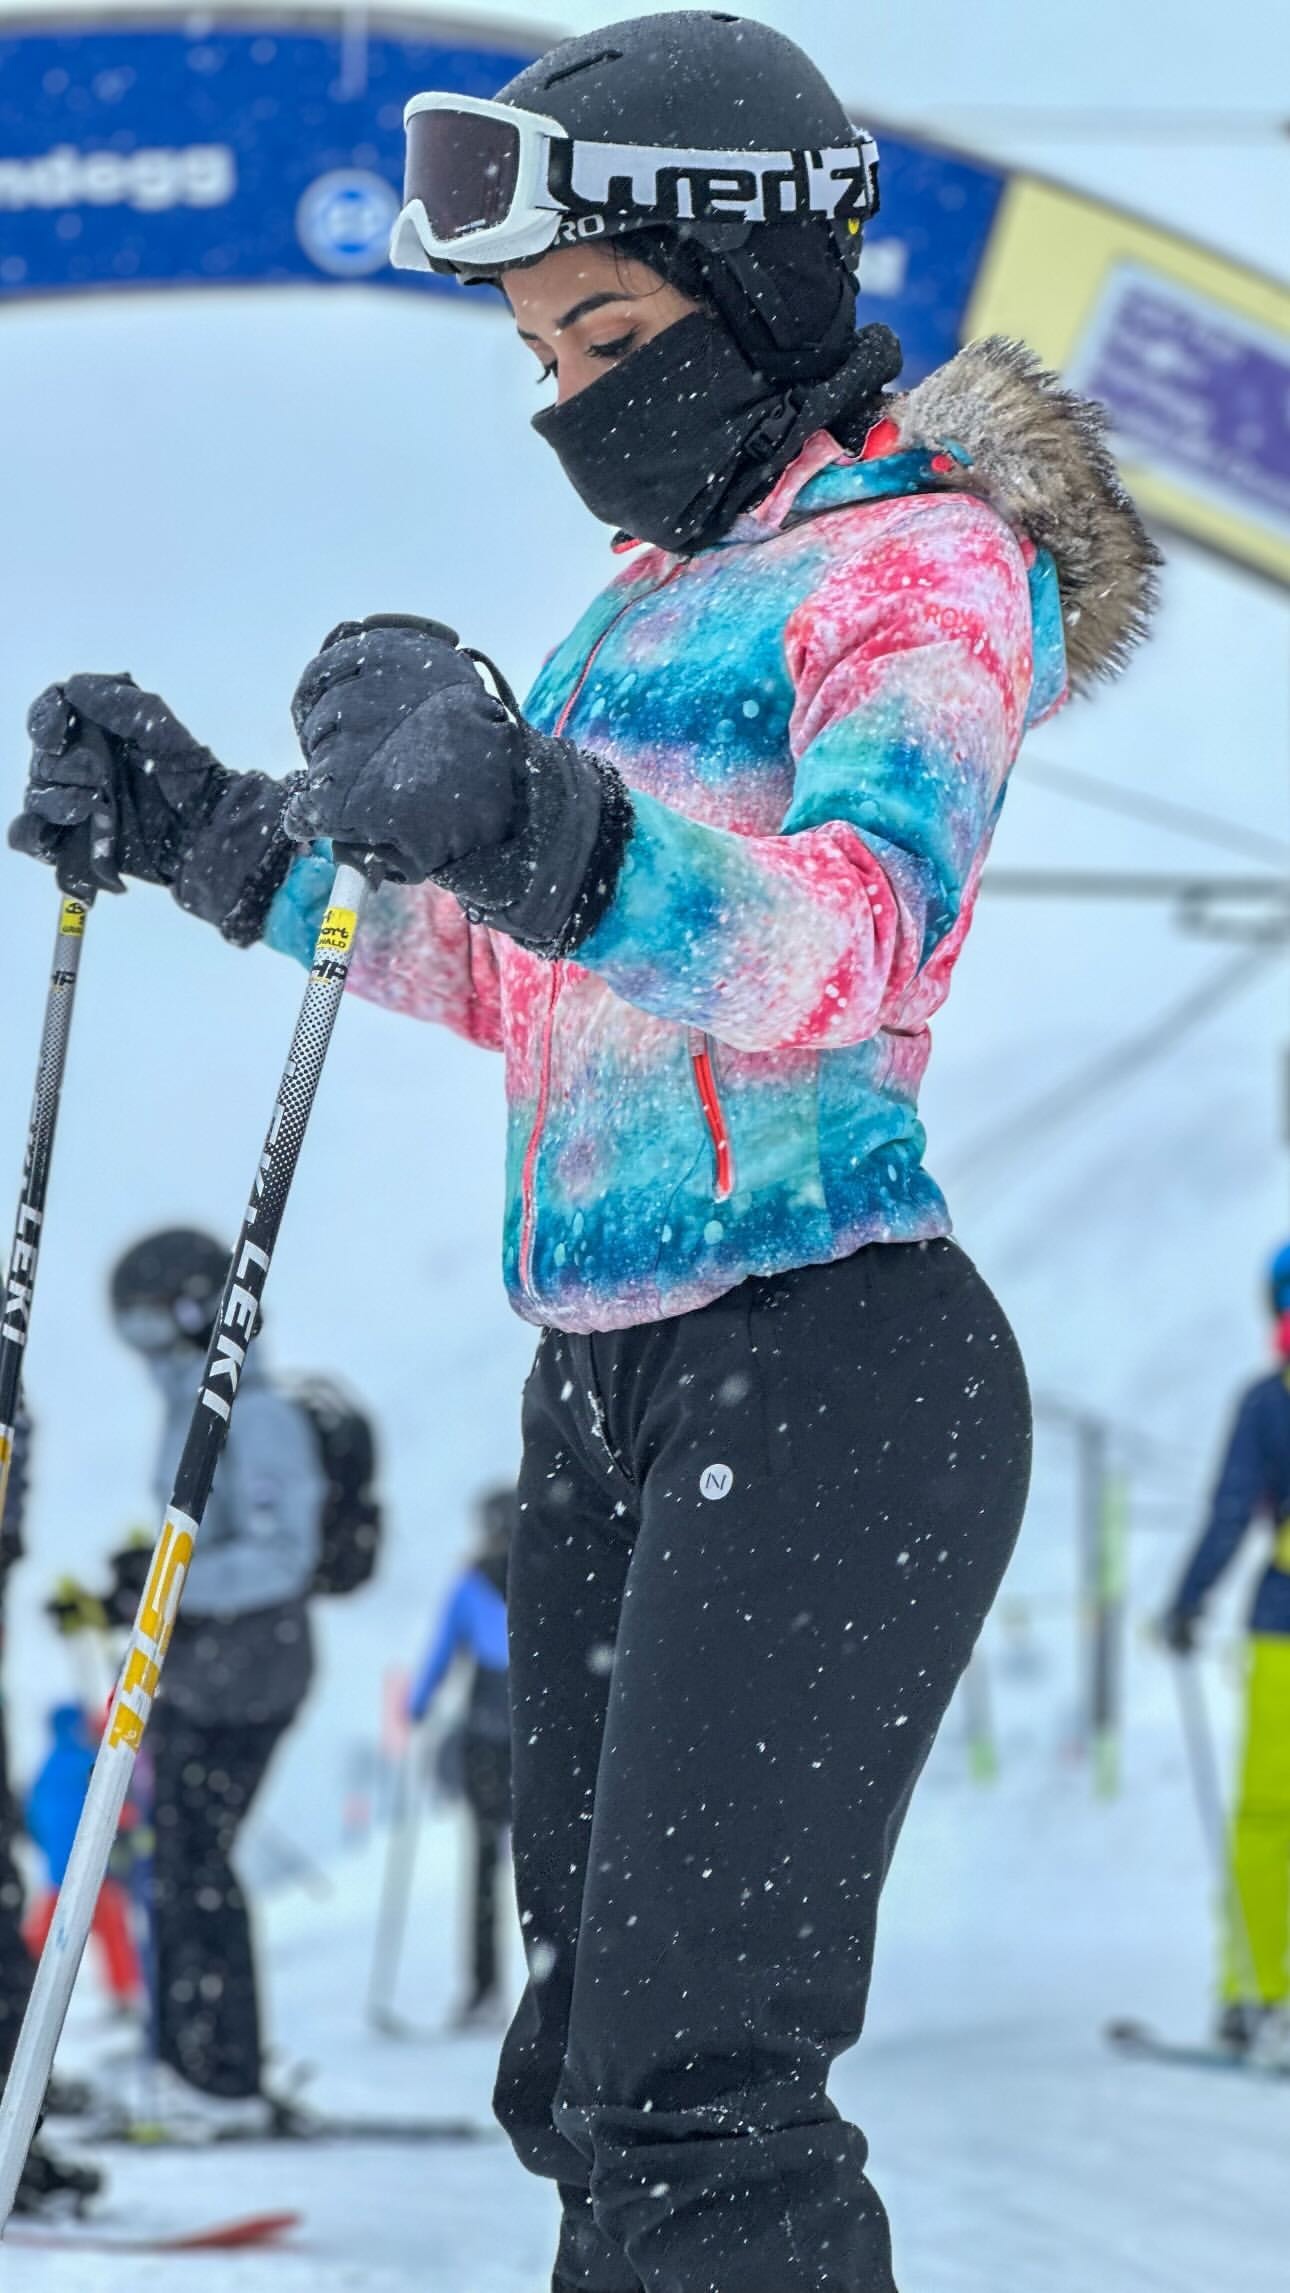 Onelia Molina vivió una experiencia única esquiando en la montaña. Fuente: Instagram